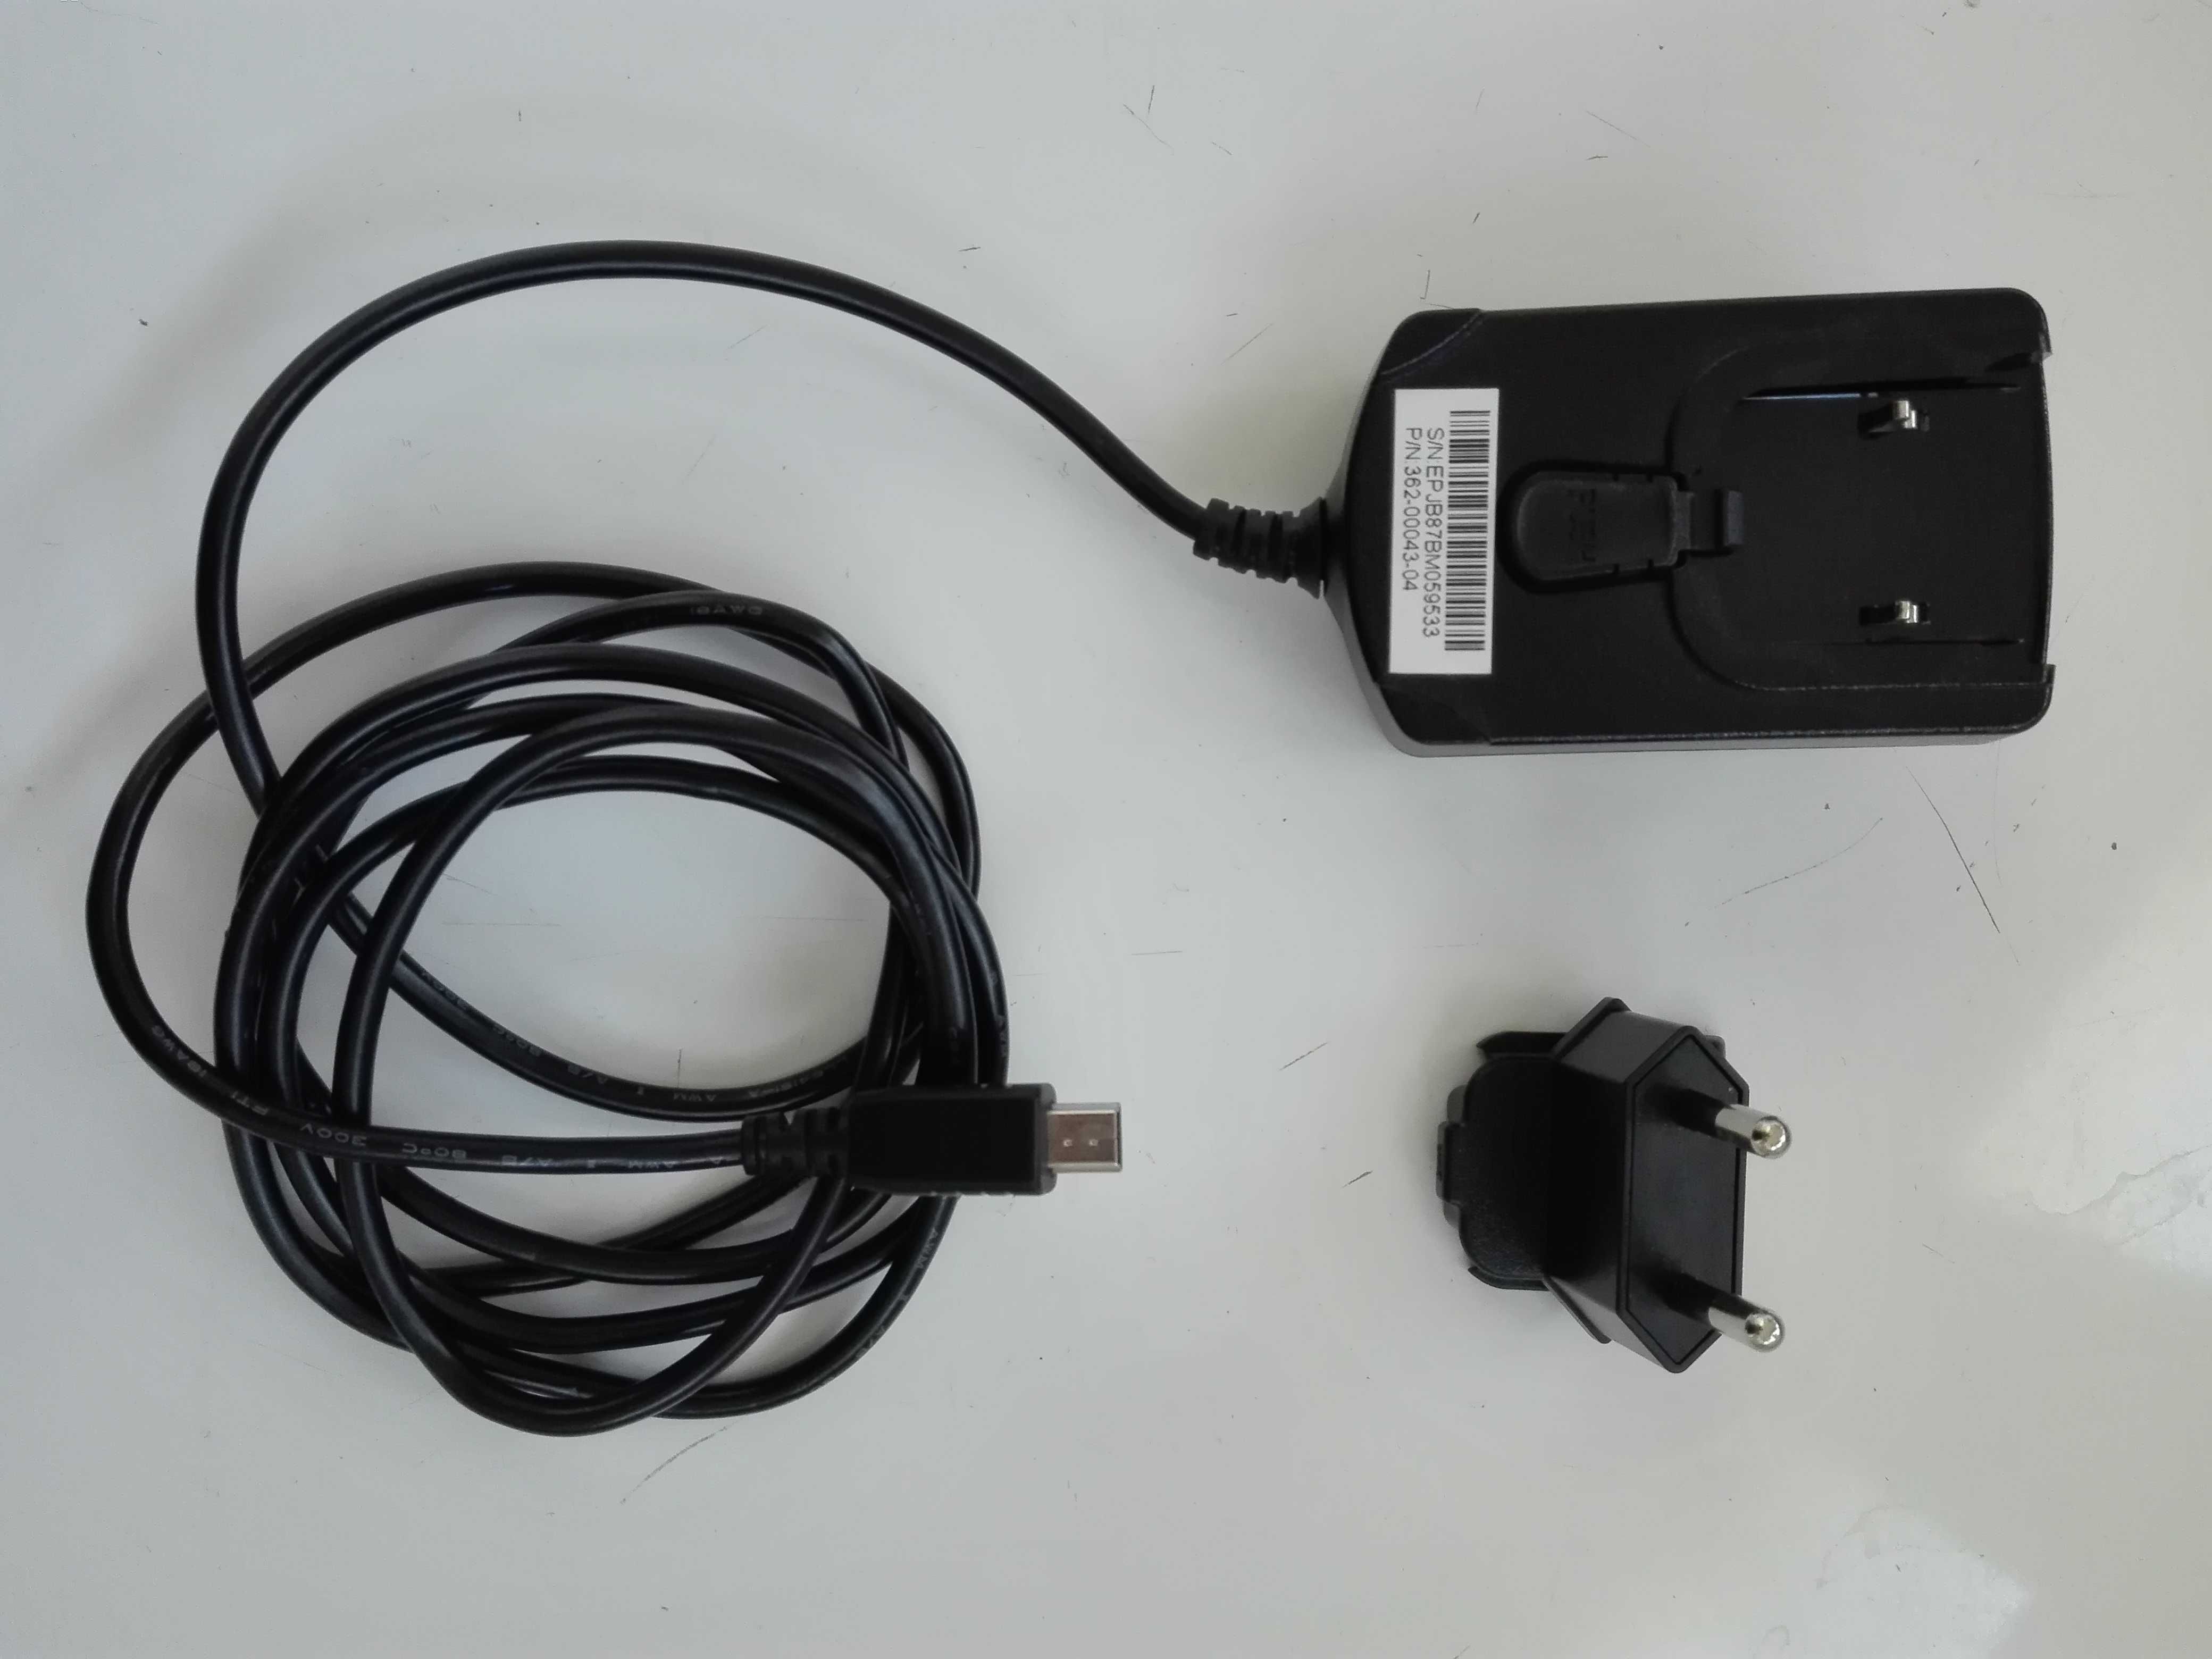 Carregador AC (220 volts) GARMIN com saída mini usb